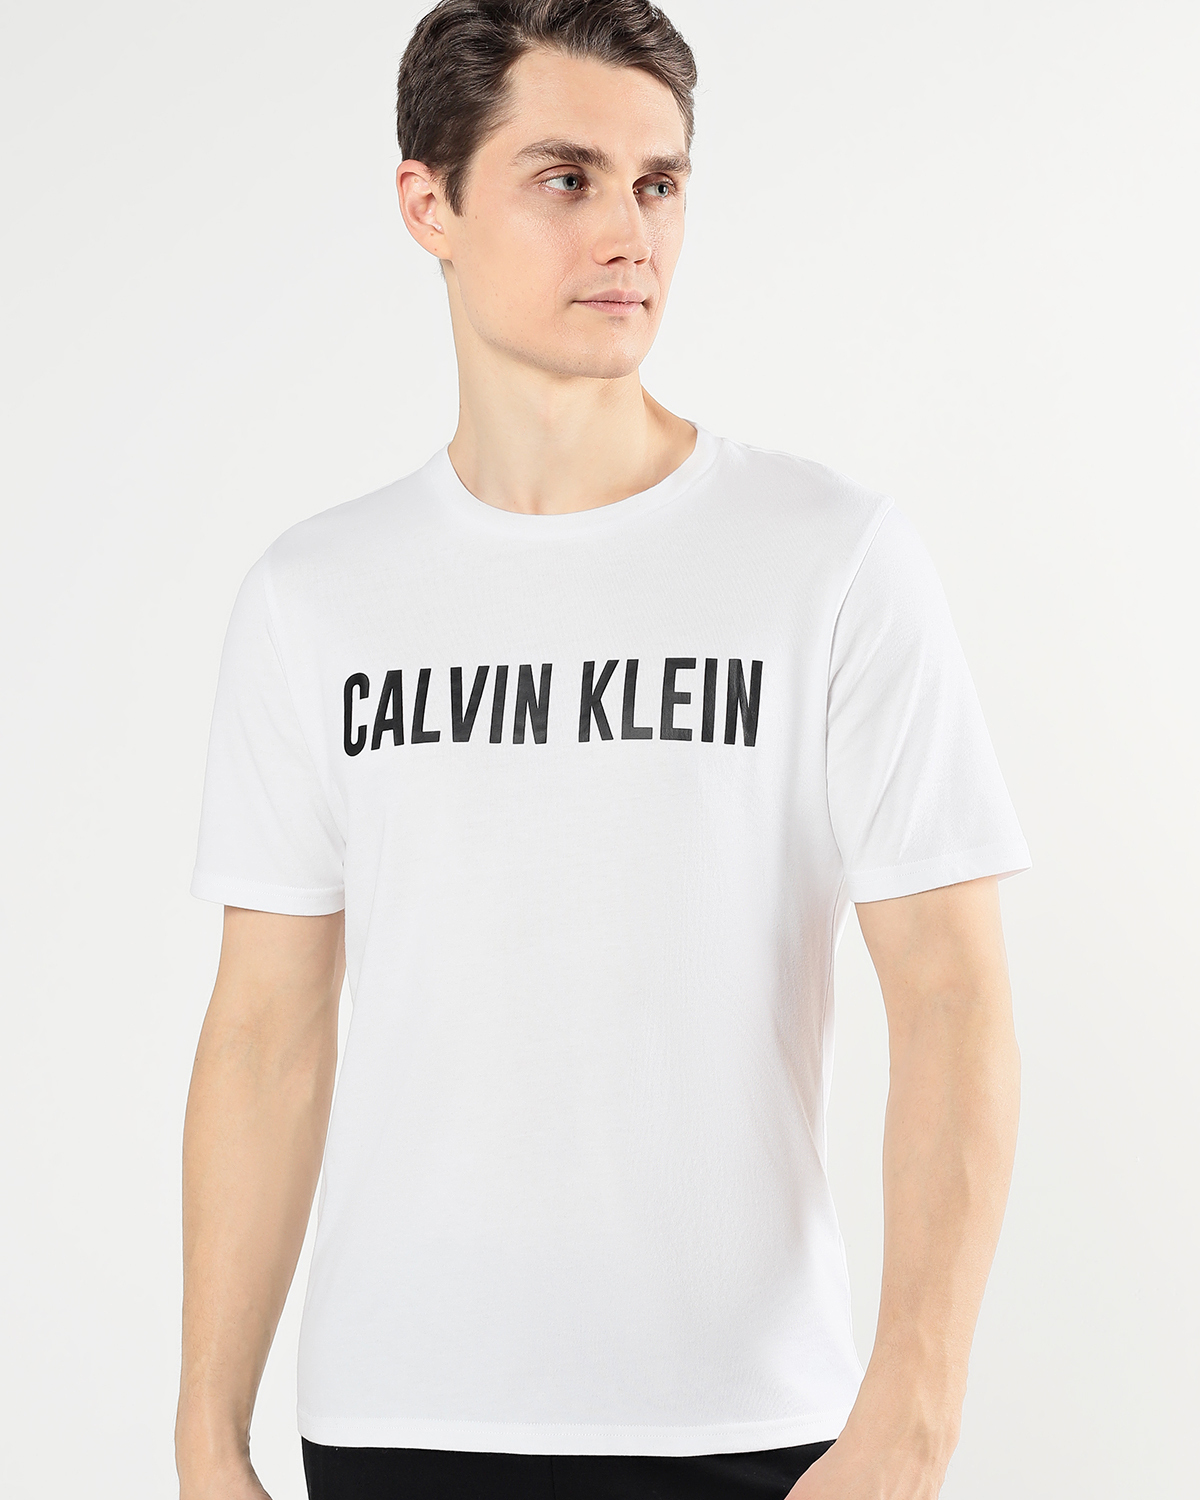 Мужские футболки на озоне. Футболка Tommy Hilfiger Mercedes. Фото футболок Кэлвин Томми. Футболки мужские купить на Озон.